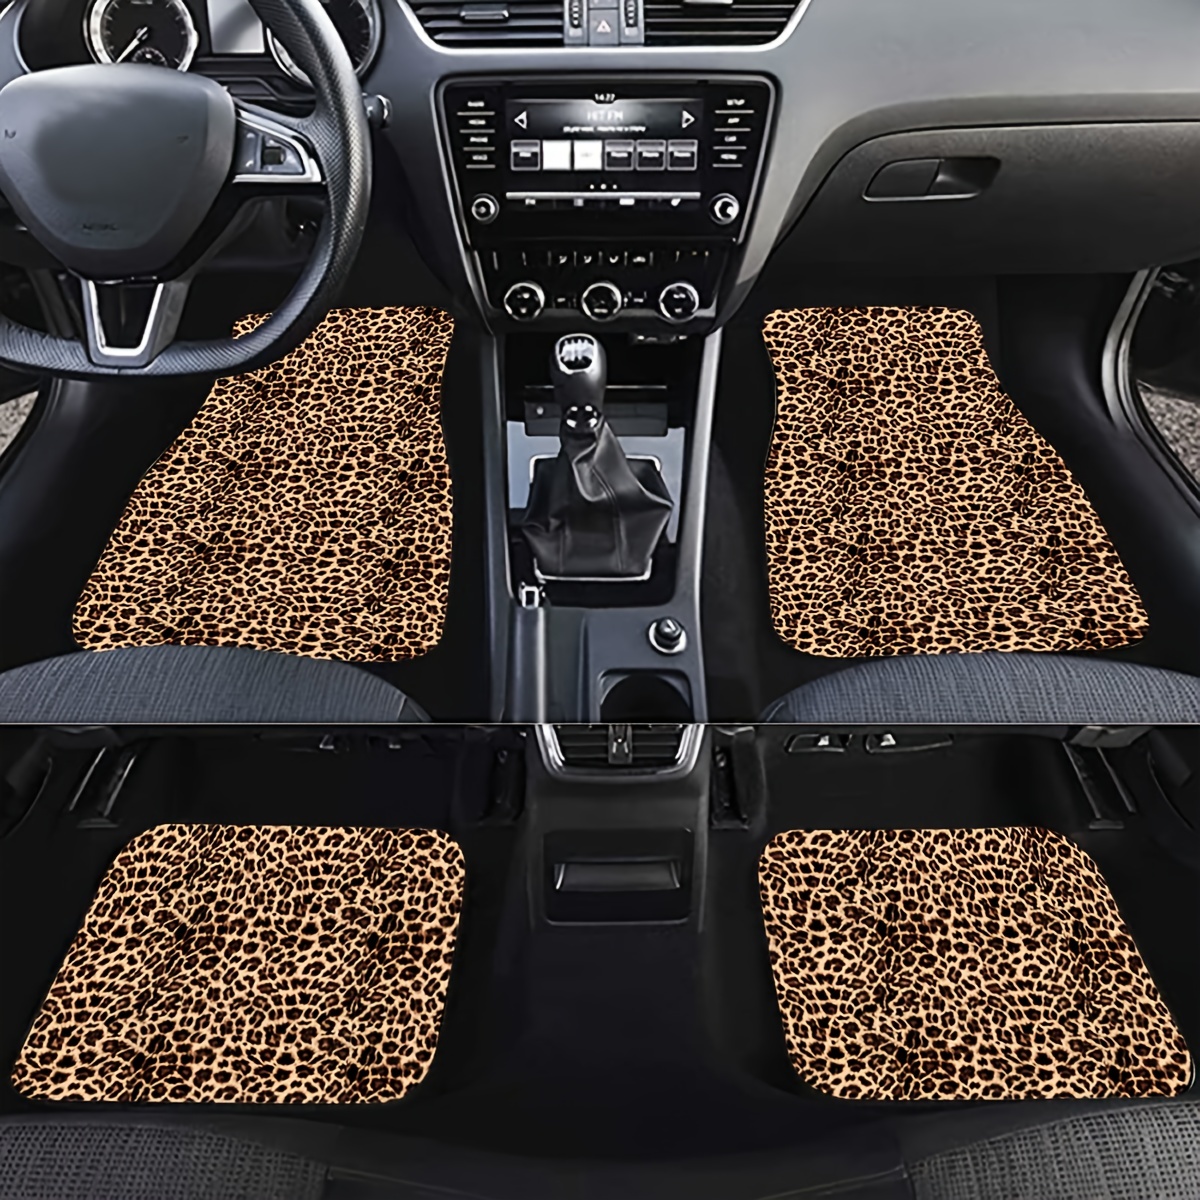 Autozubehör Mit Leopardenmuster - Kostenlose Rückgabe Innerhalb